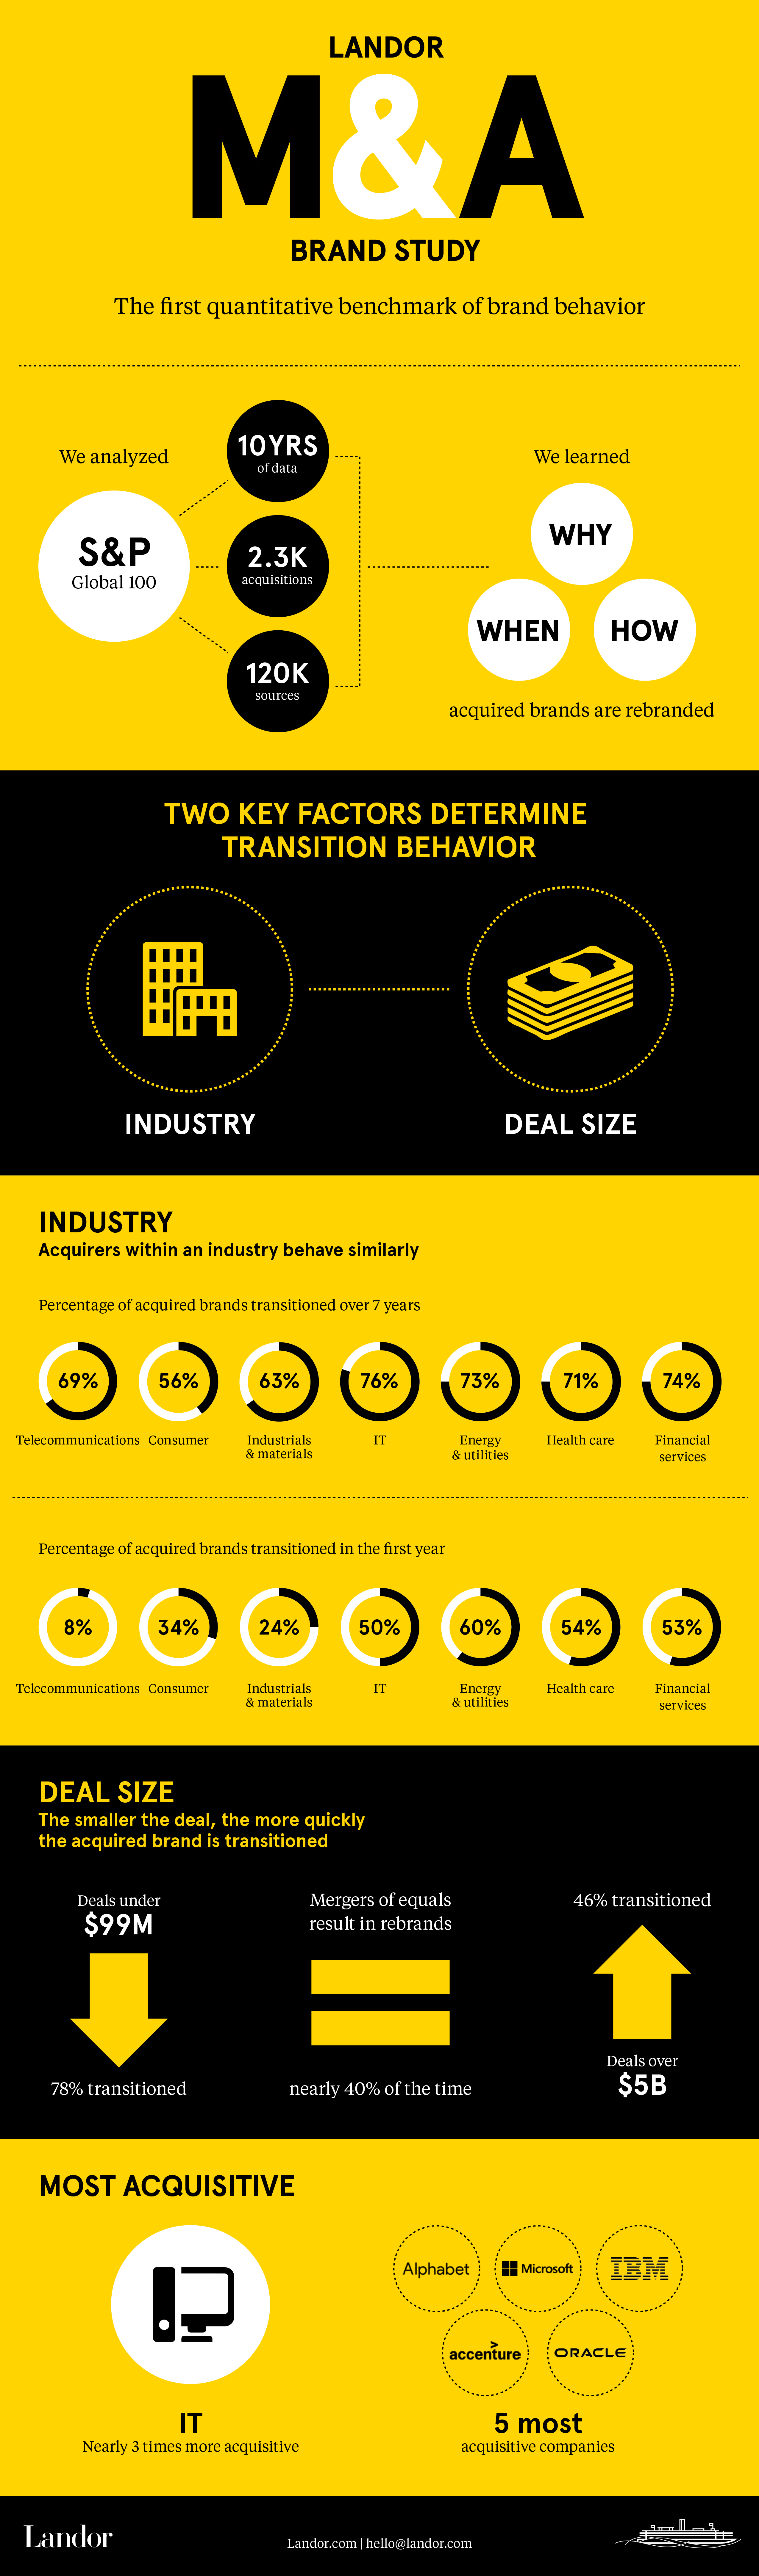 Infographic: The Landor M&A Brand Study